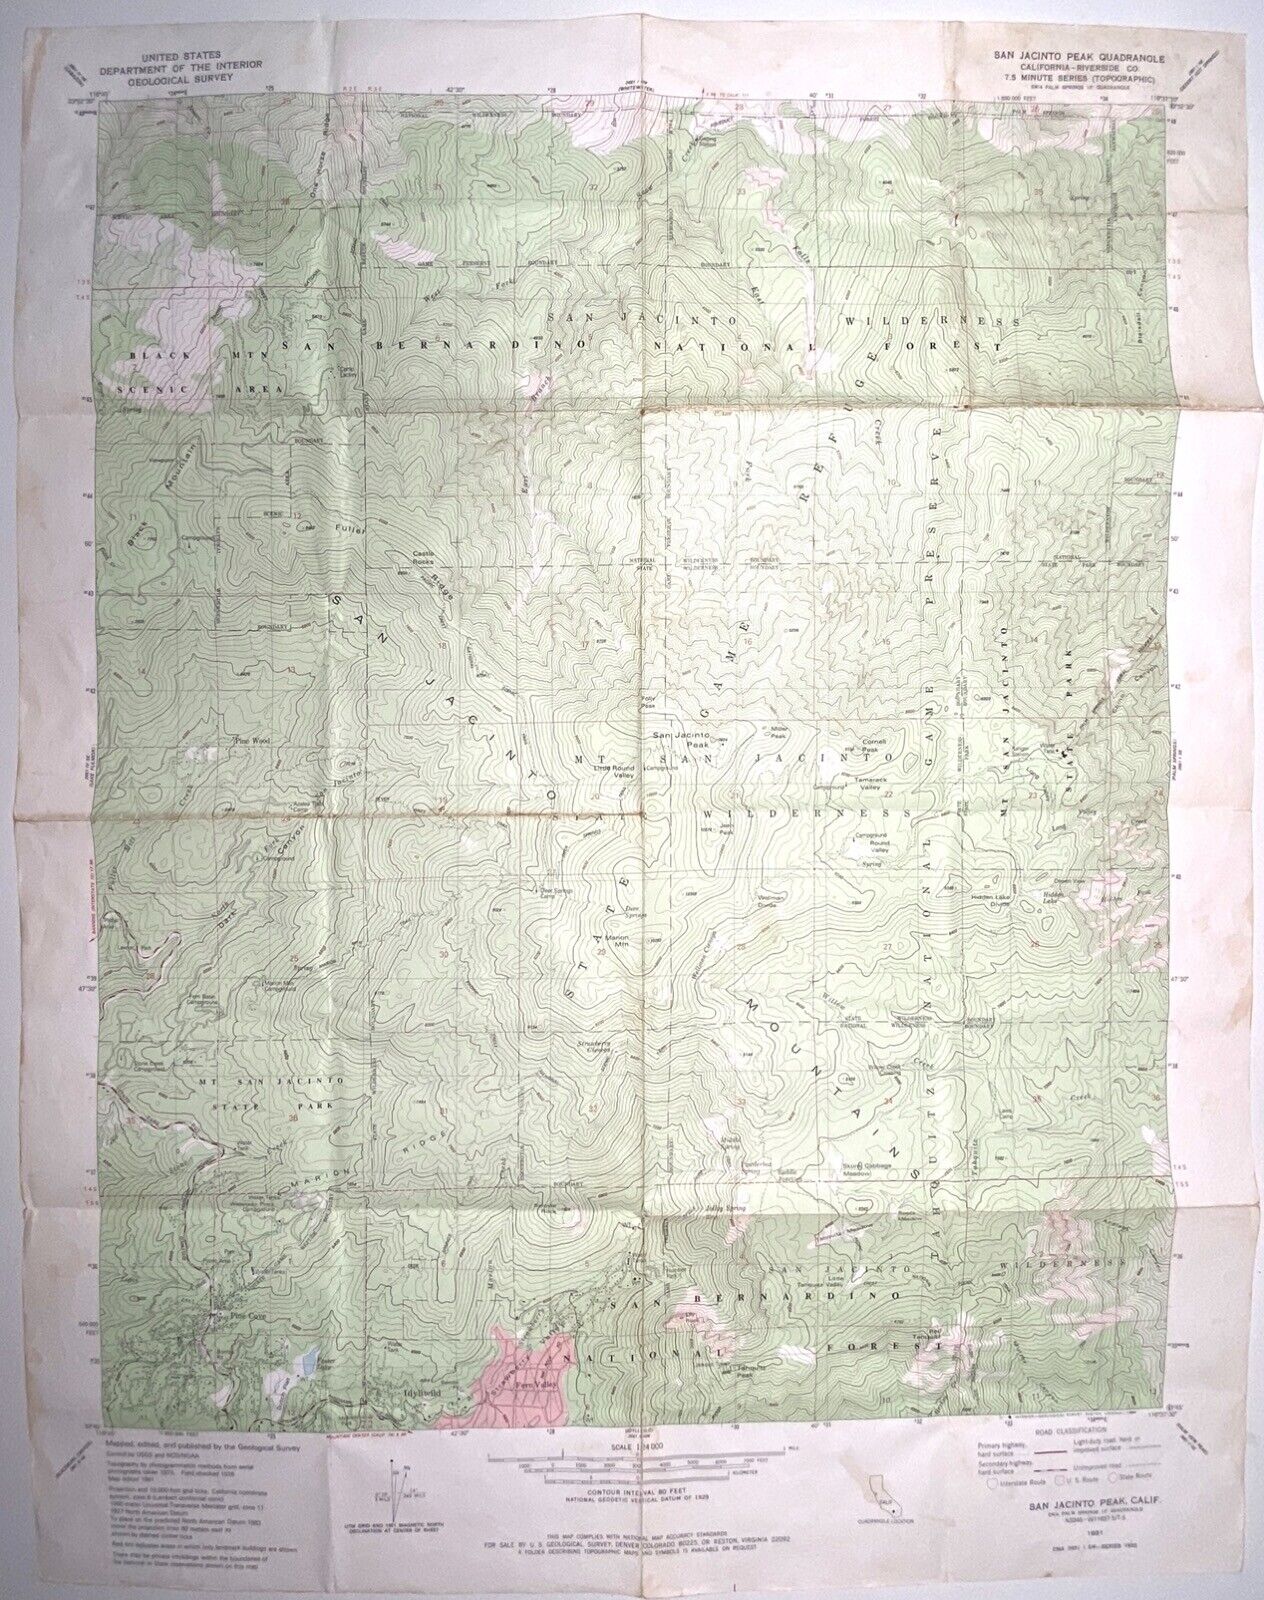 San Jacinto Peak Quas - Riverside California • 1981 Geological Topographic Map